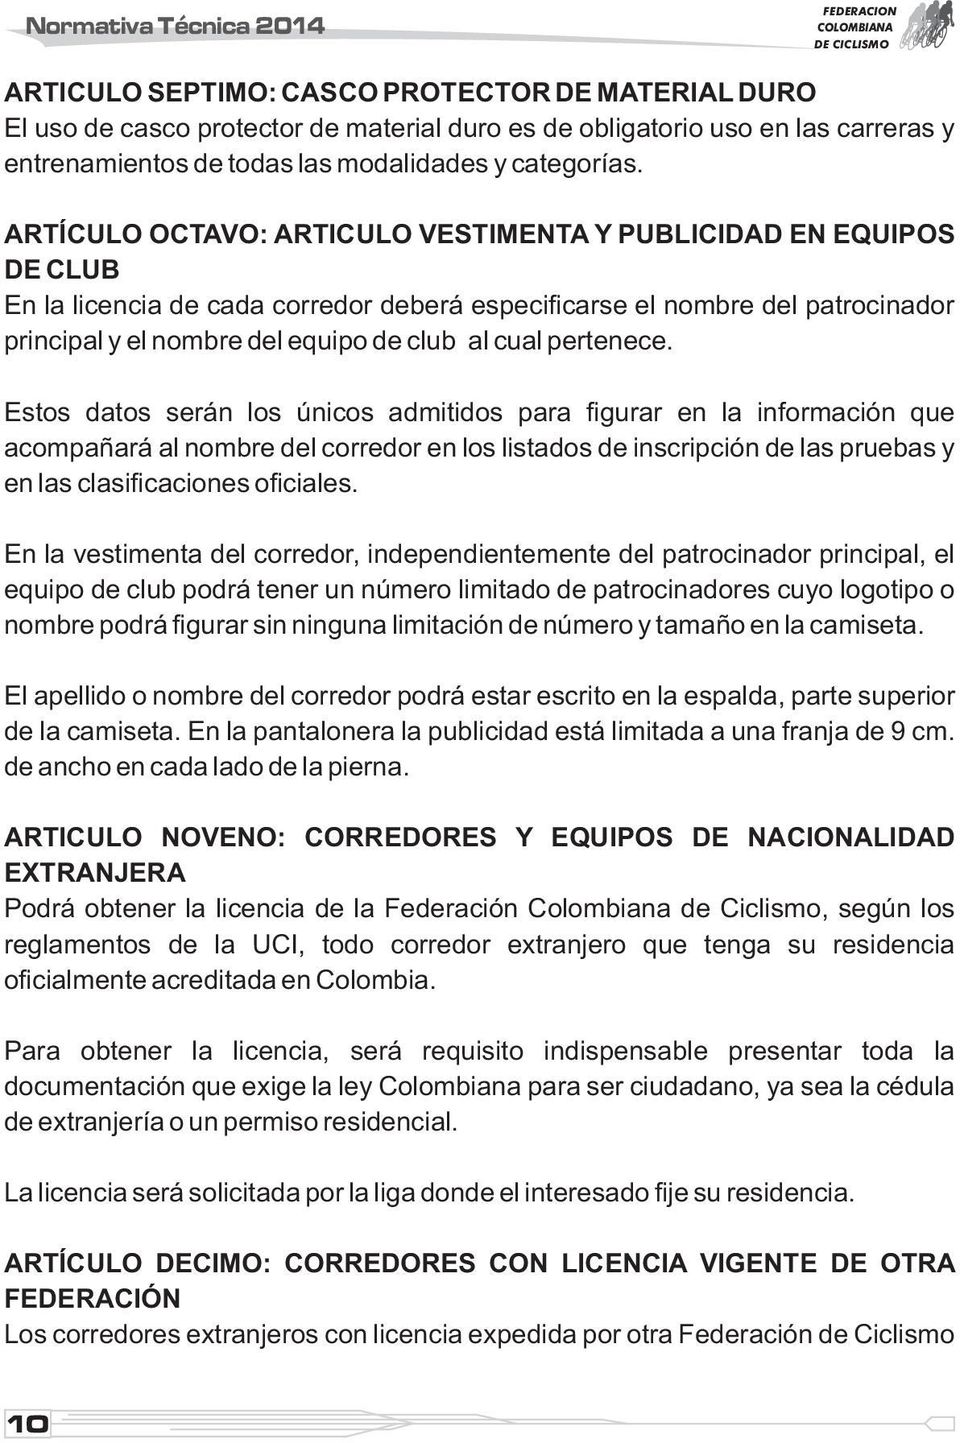 ARTÍCULO OCTAVO: ARTICULO VESTIMENTA Y PUBLICIDAD EN EQUIPOS DE CLUB En la licencia de cada corredor deberá especificarse el nombre del patrocinador principal y el nombre del equipo de club al cual